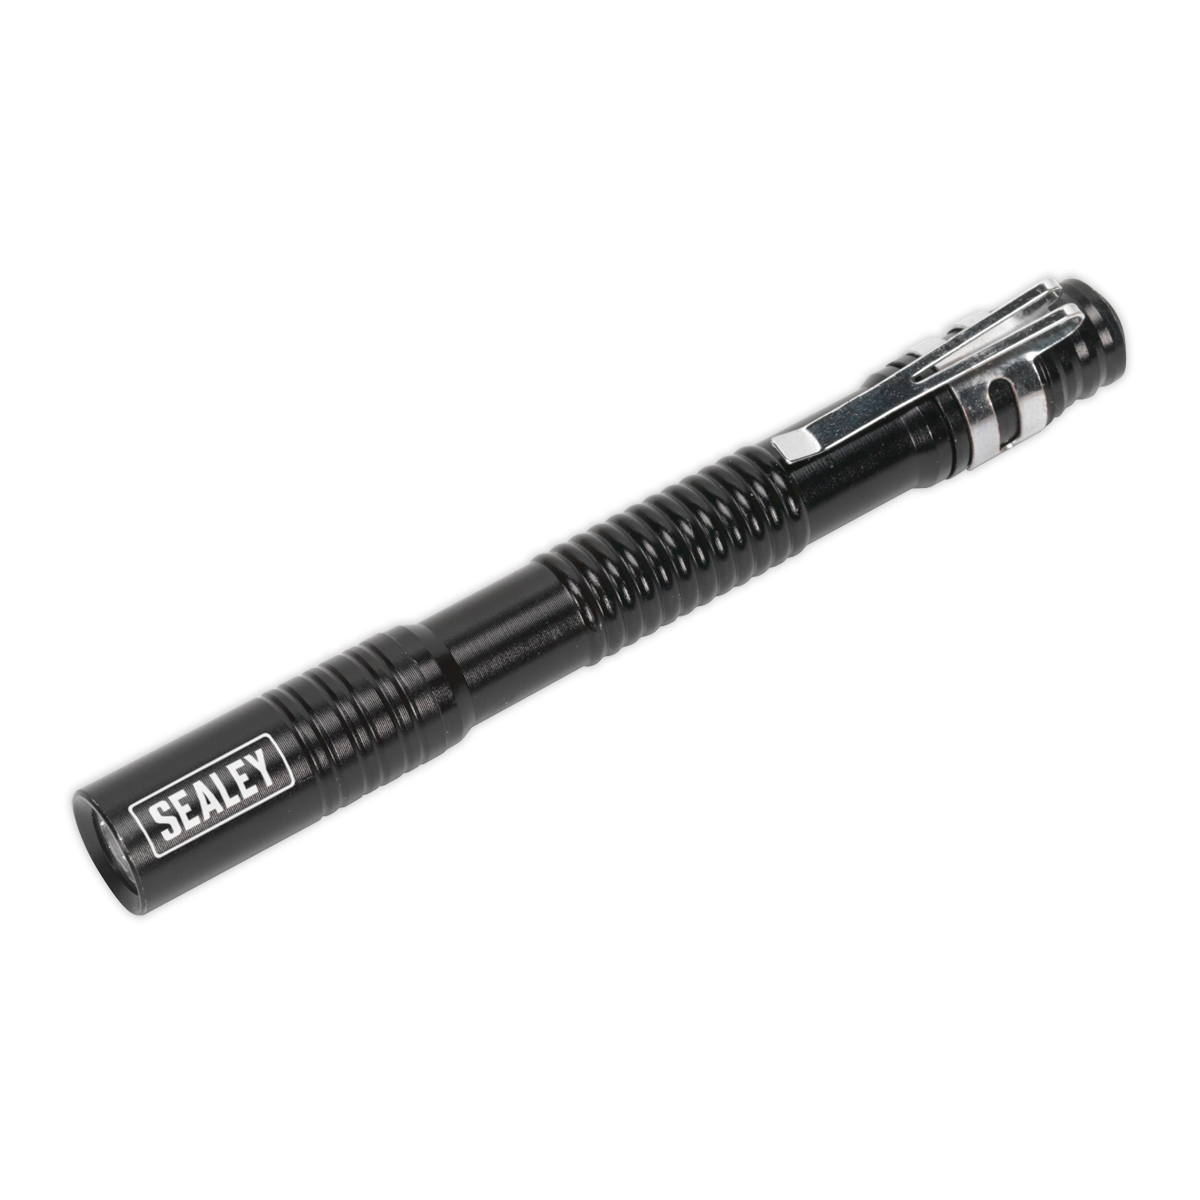 Aluminium Penlight 0.5W LED 2 x AAA Cell - LED043 - Farming Parts